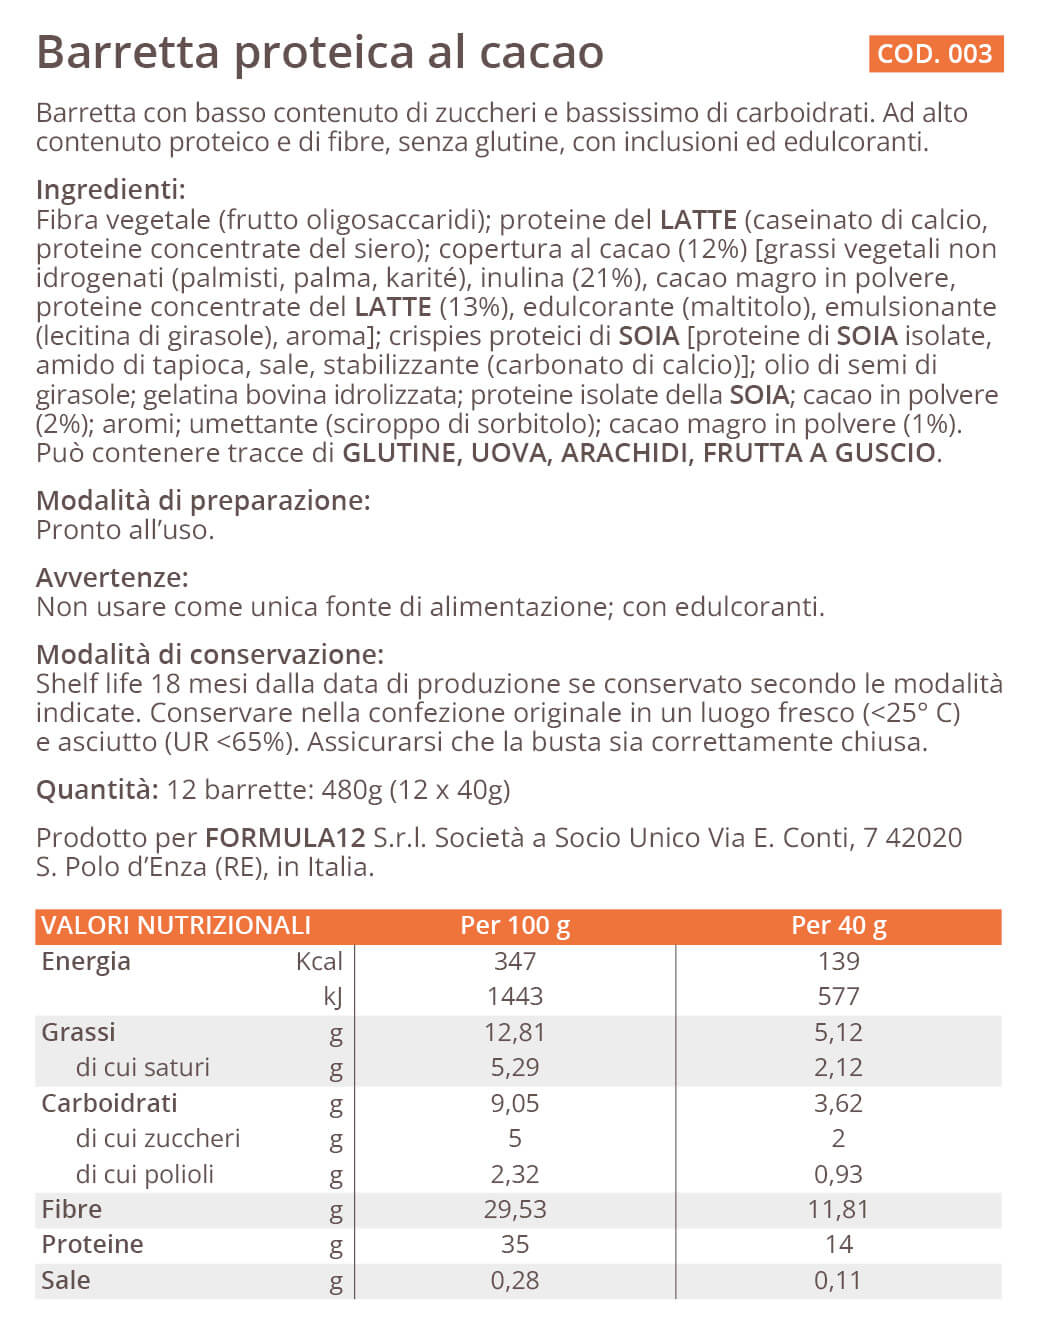 003_Barretta-proteica-al-cacao